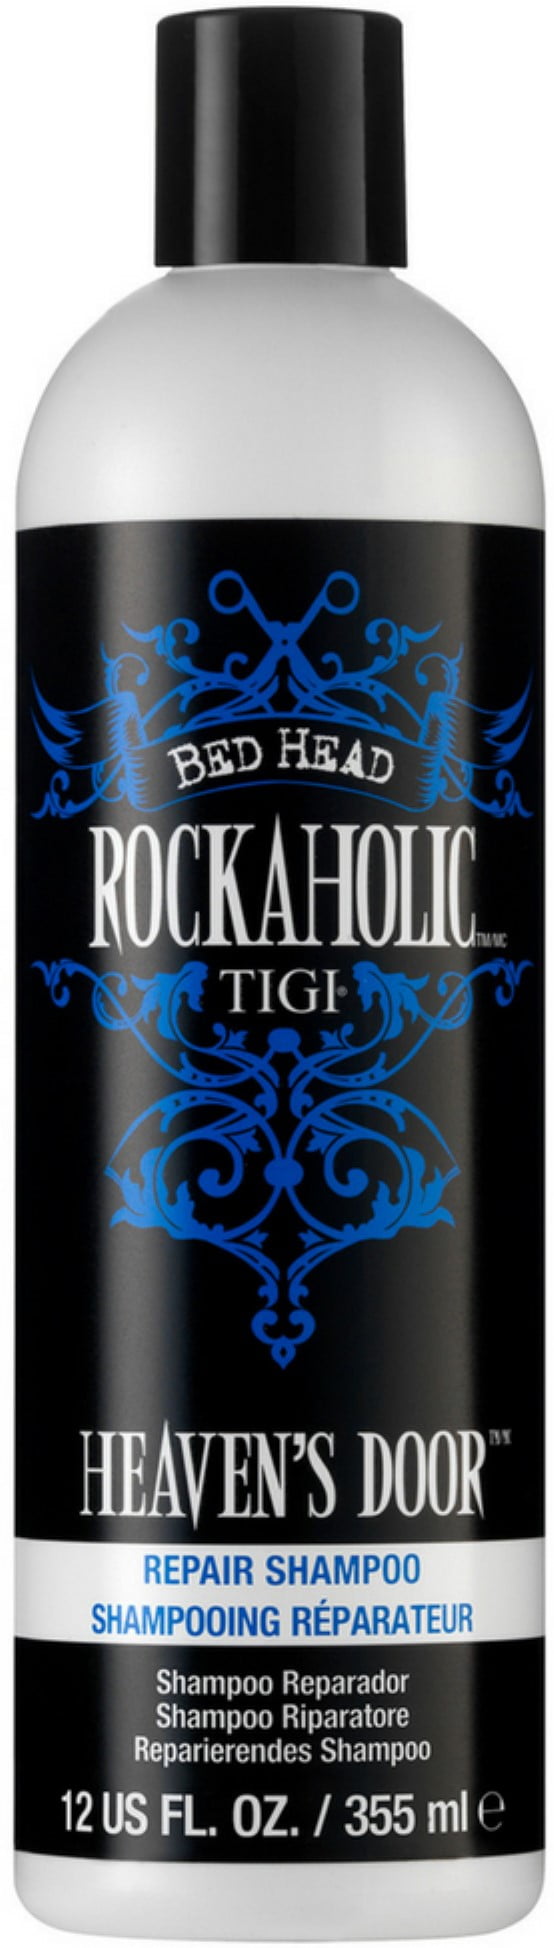 Tigi Rockaholic By Bed Head Heaven S Door Repair Shampoo Oz